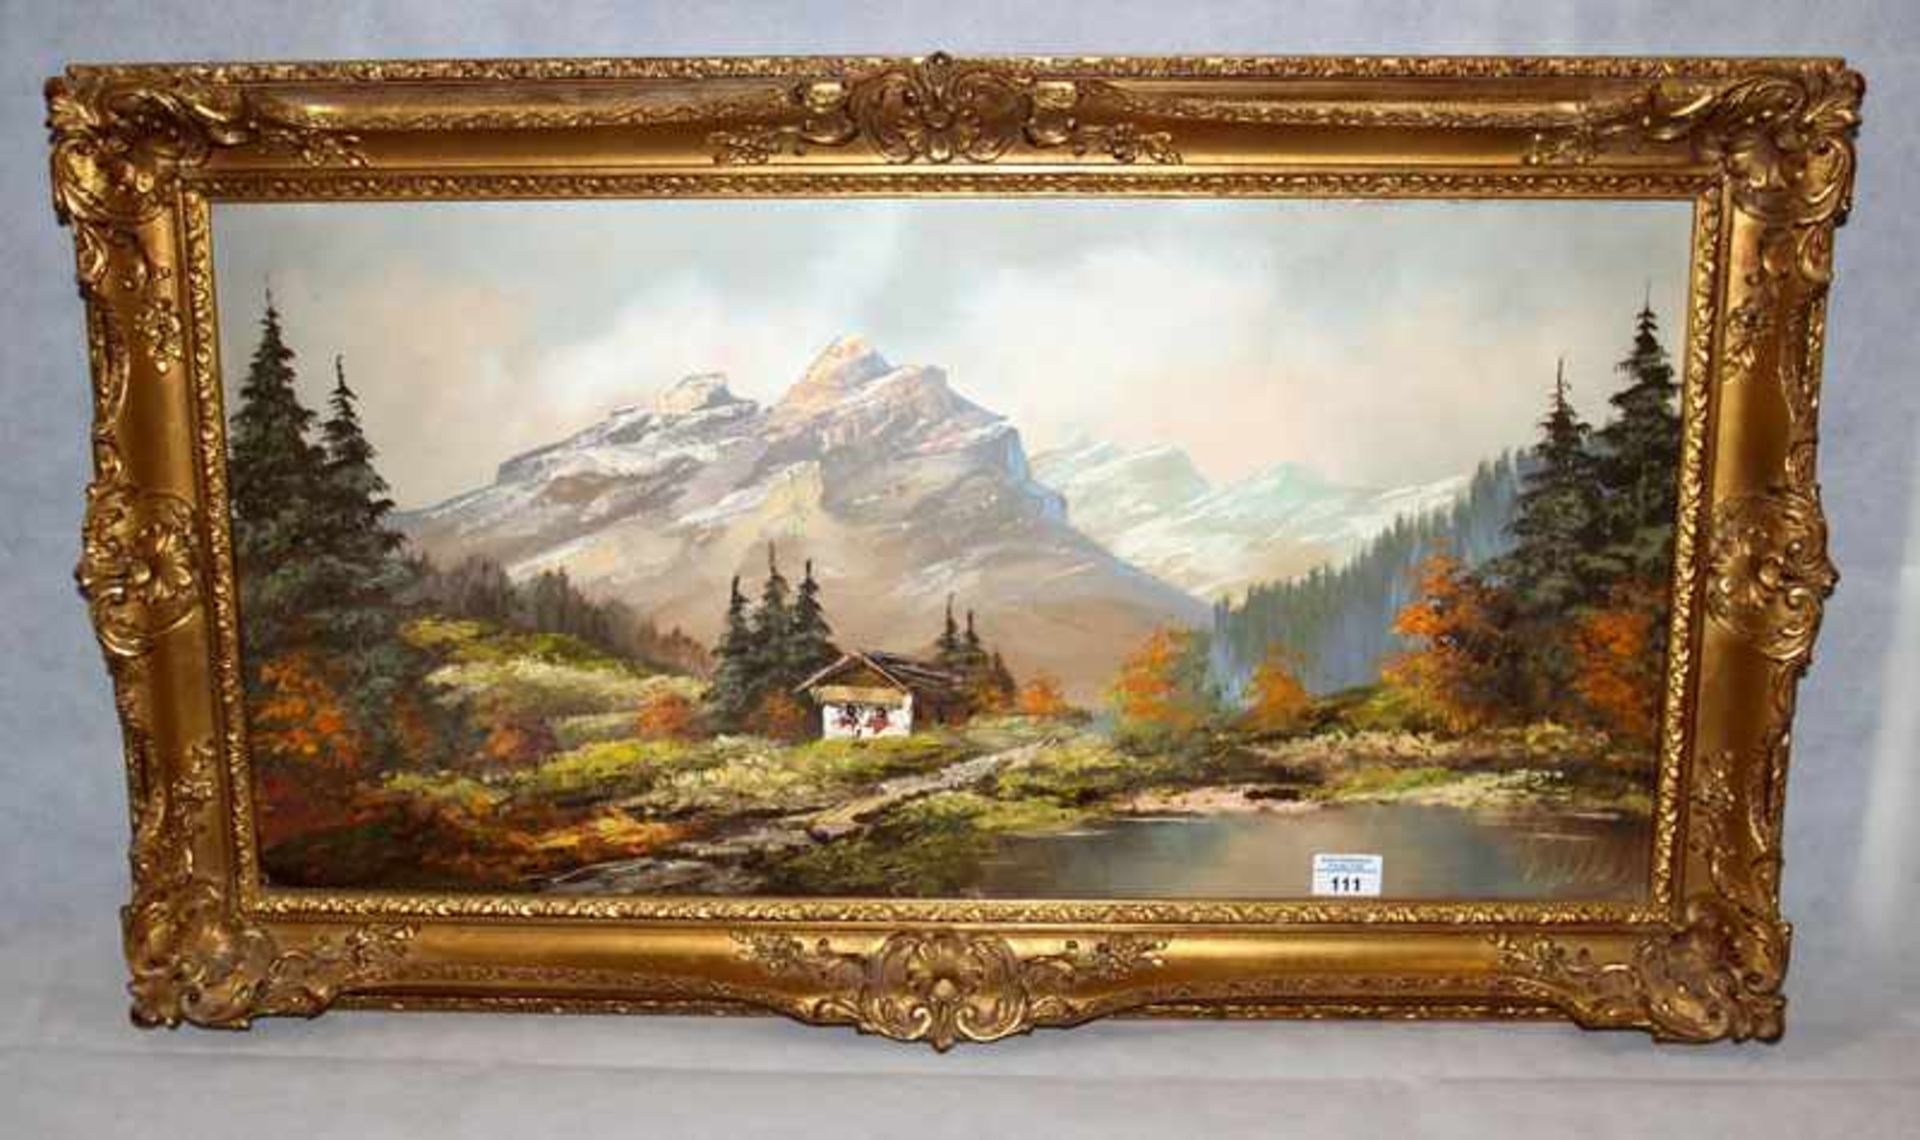 Gemälde ÖL/LW 'Bauernhof im Hochgebirge', undeutlich signiert, gerahmt, incl. Rahmen 54 cm x 95 cm